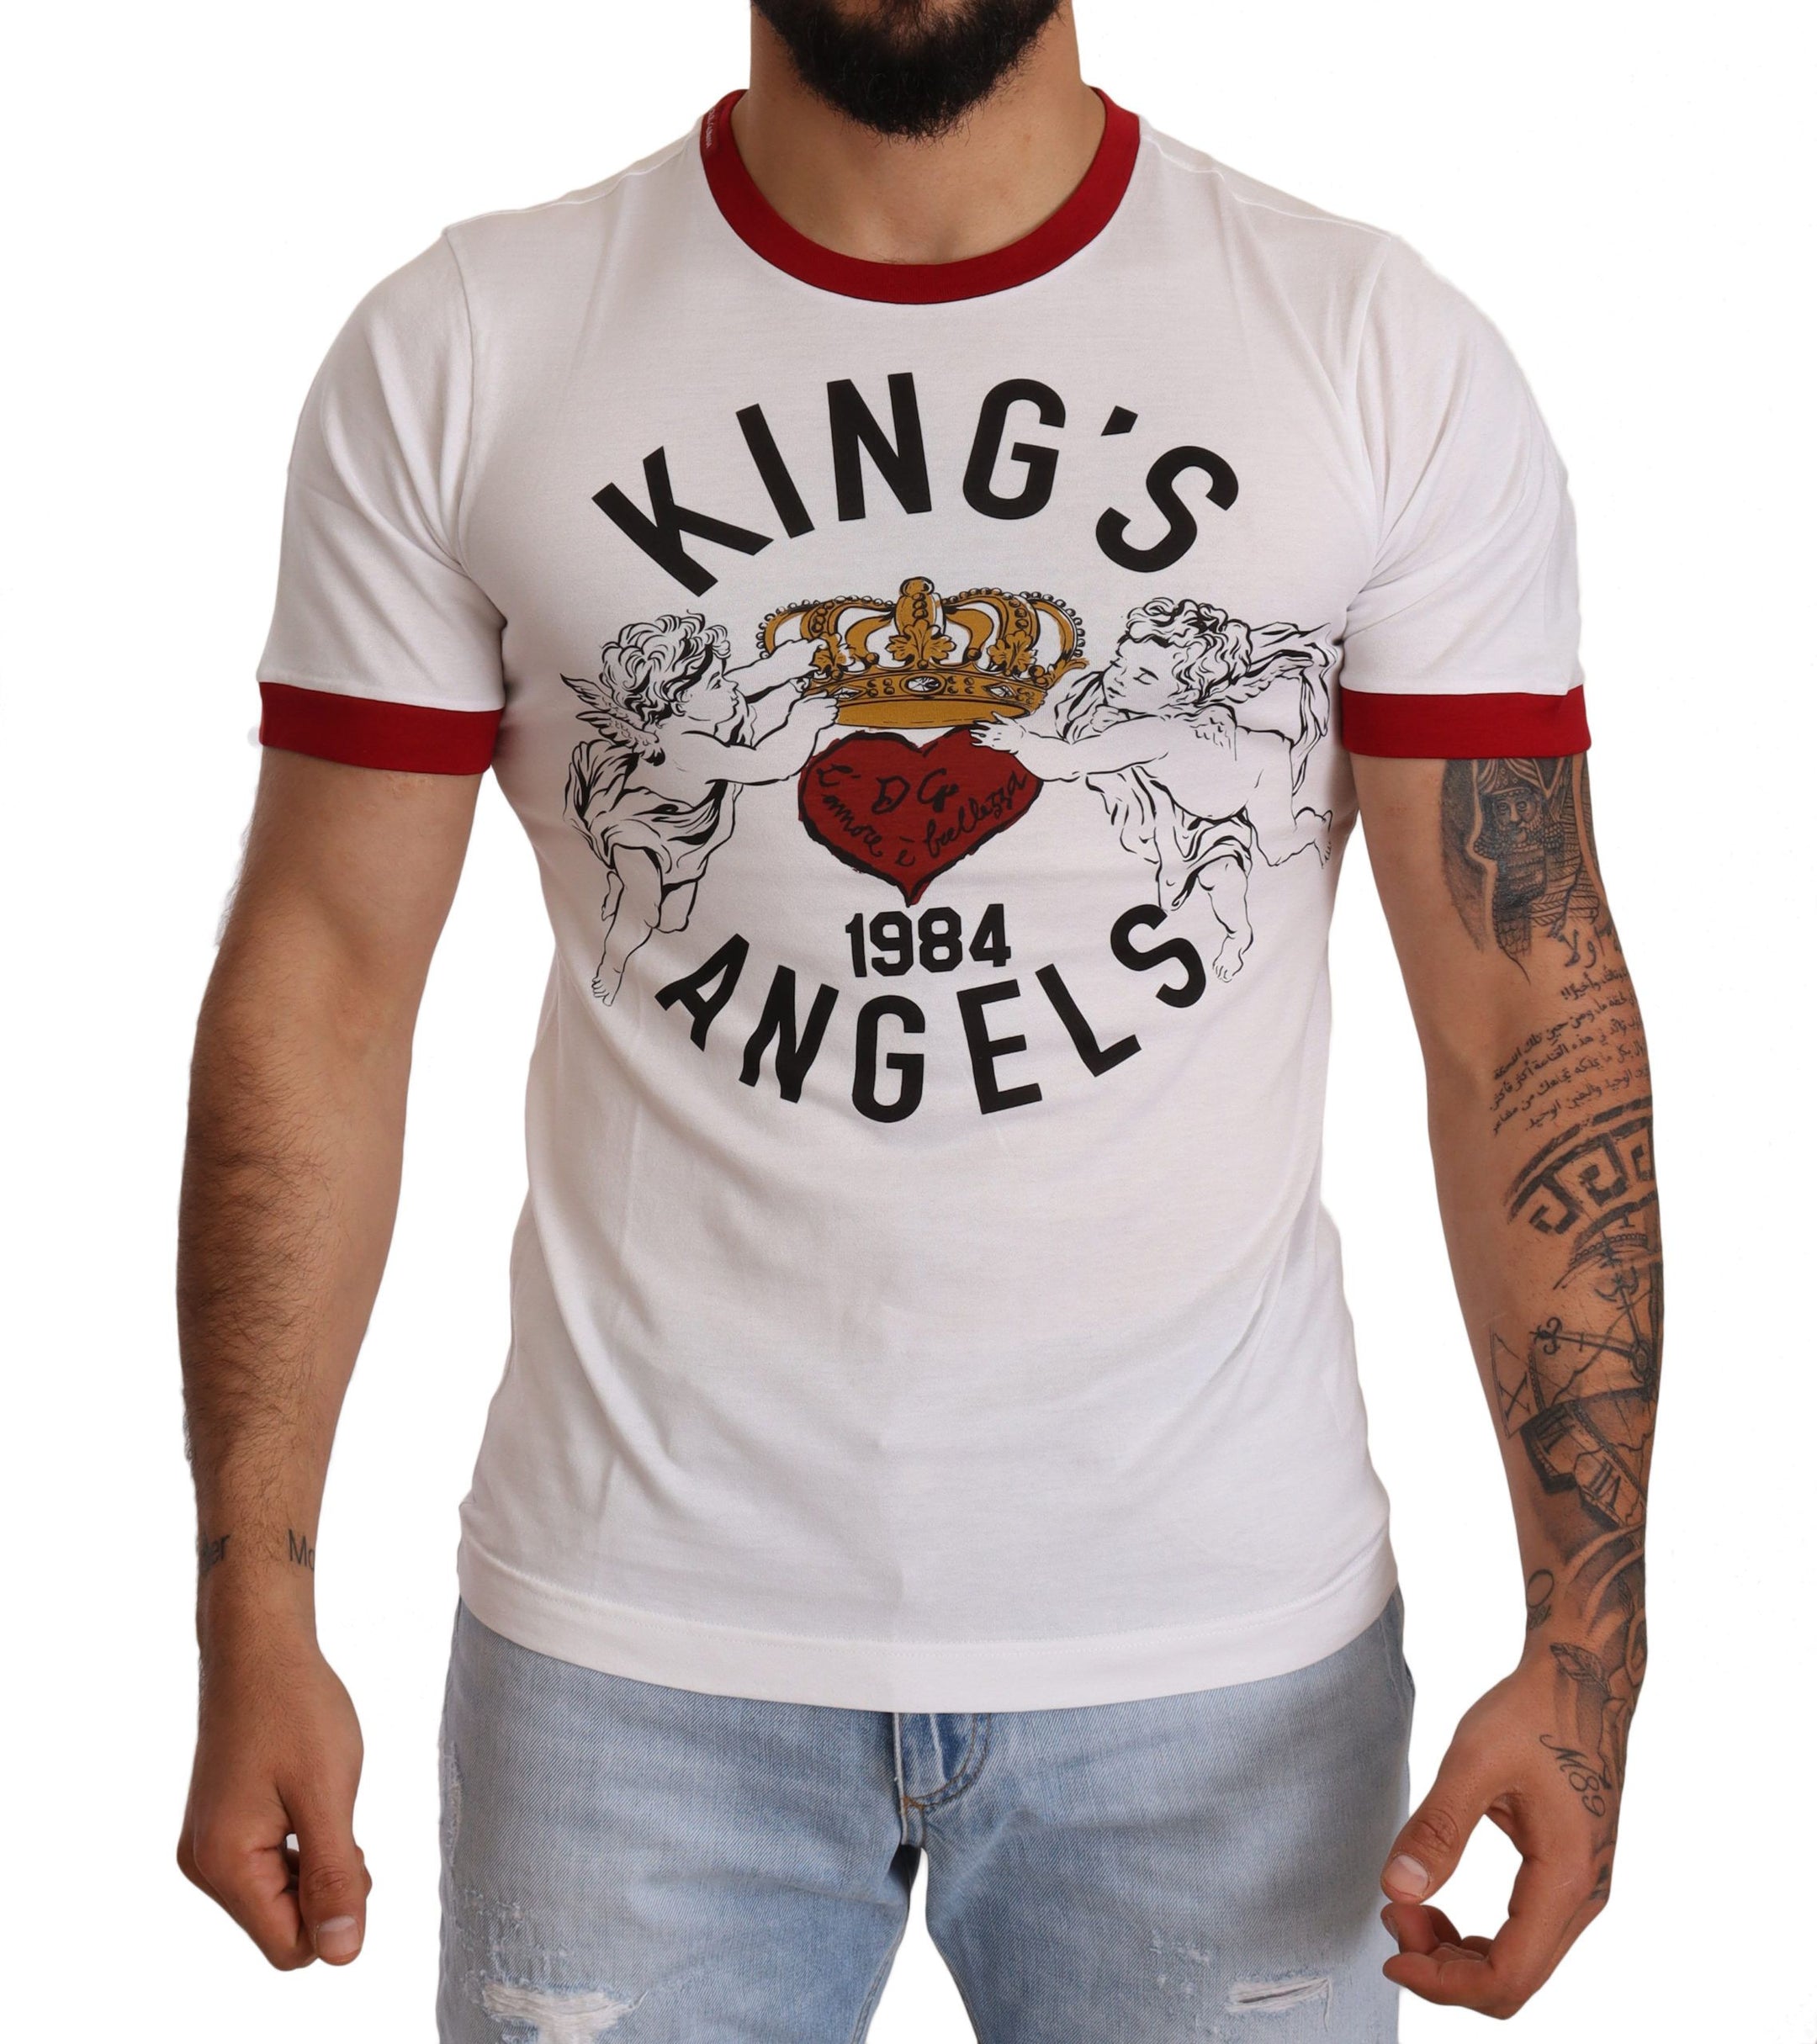 Exquisite Angelic Motif Cotton T-Shirt